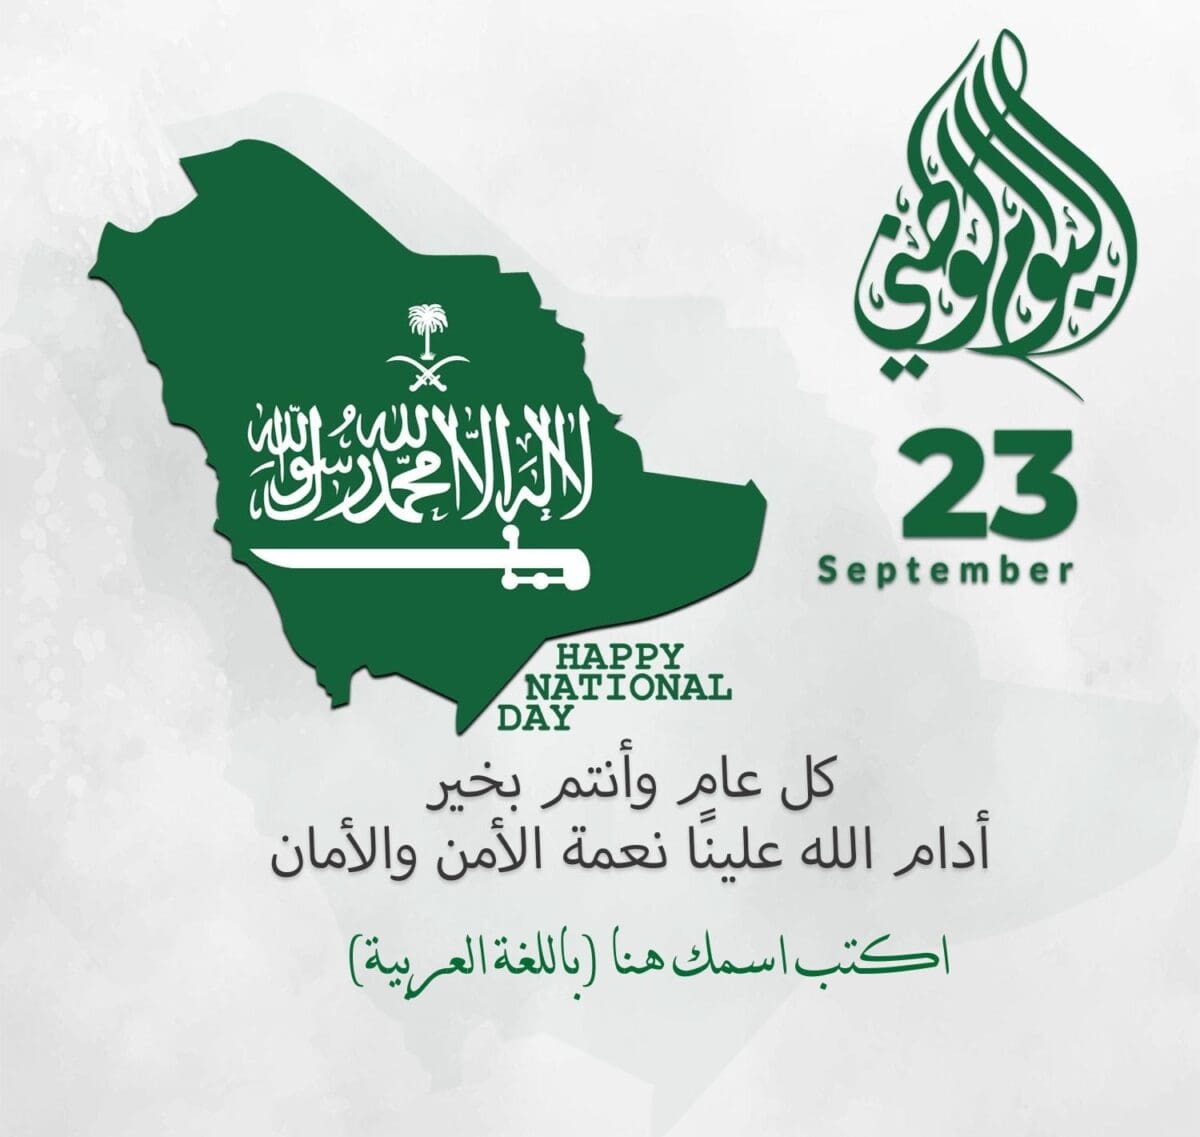 بطاقات تهنئة للوطن بمناسبة اليوم الوطني السعودي